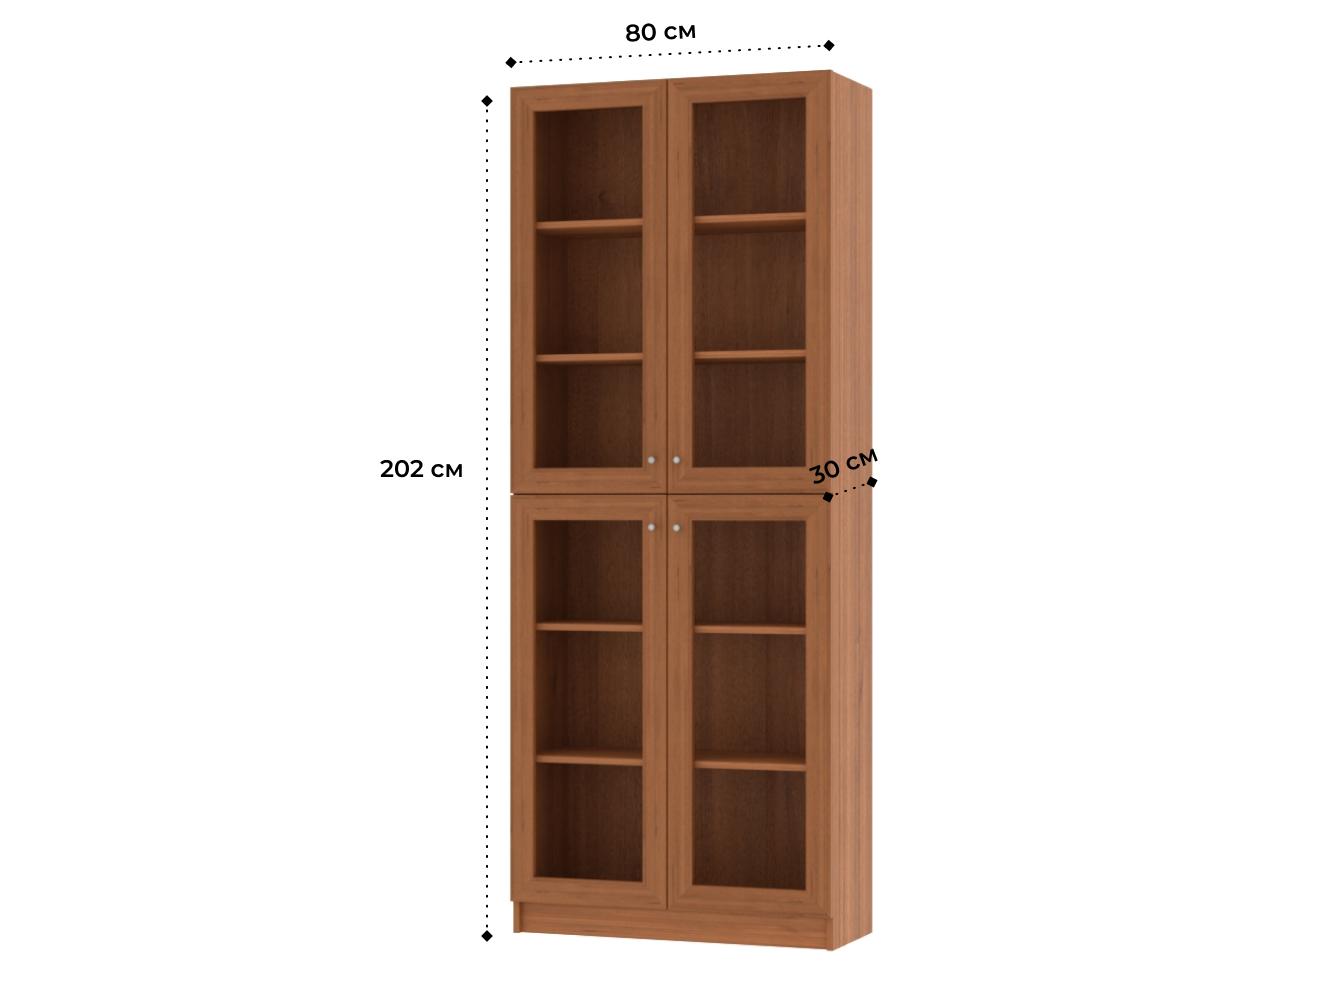  Книжный шкаф Билли 335 walnut guarneri ИКЕА (IKEA) изображение товара